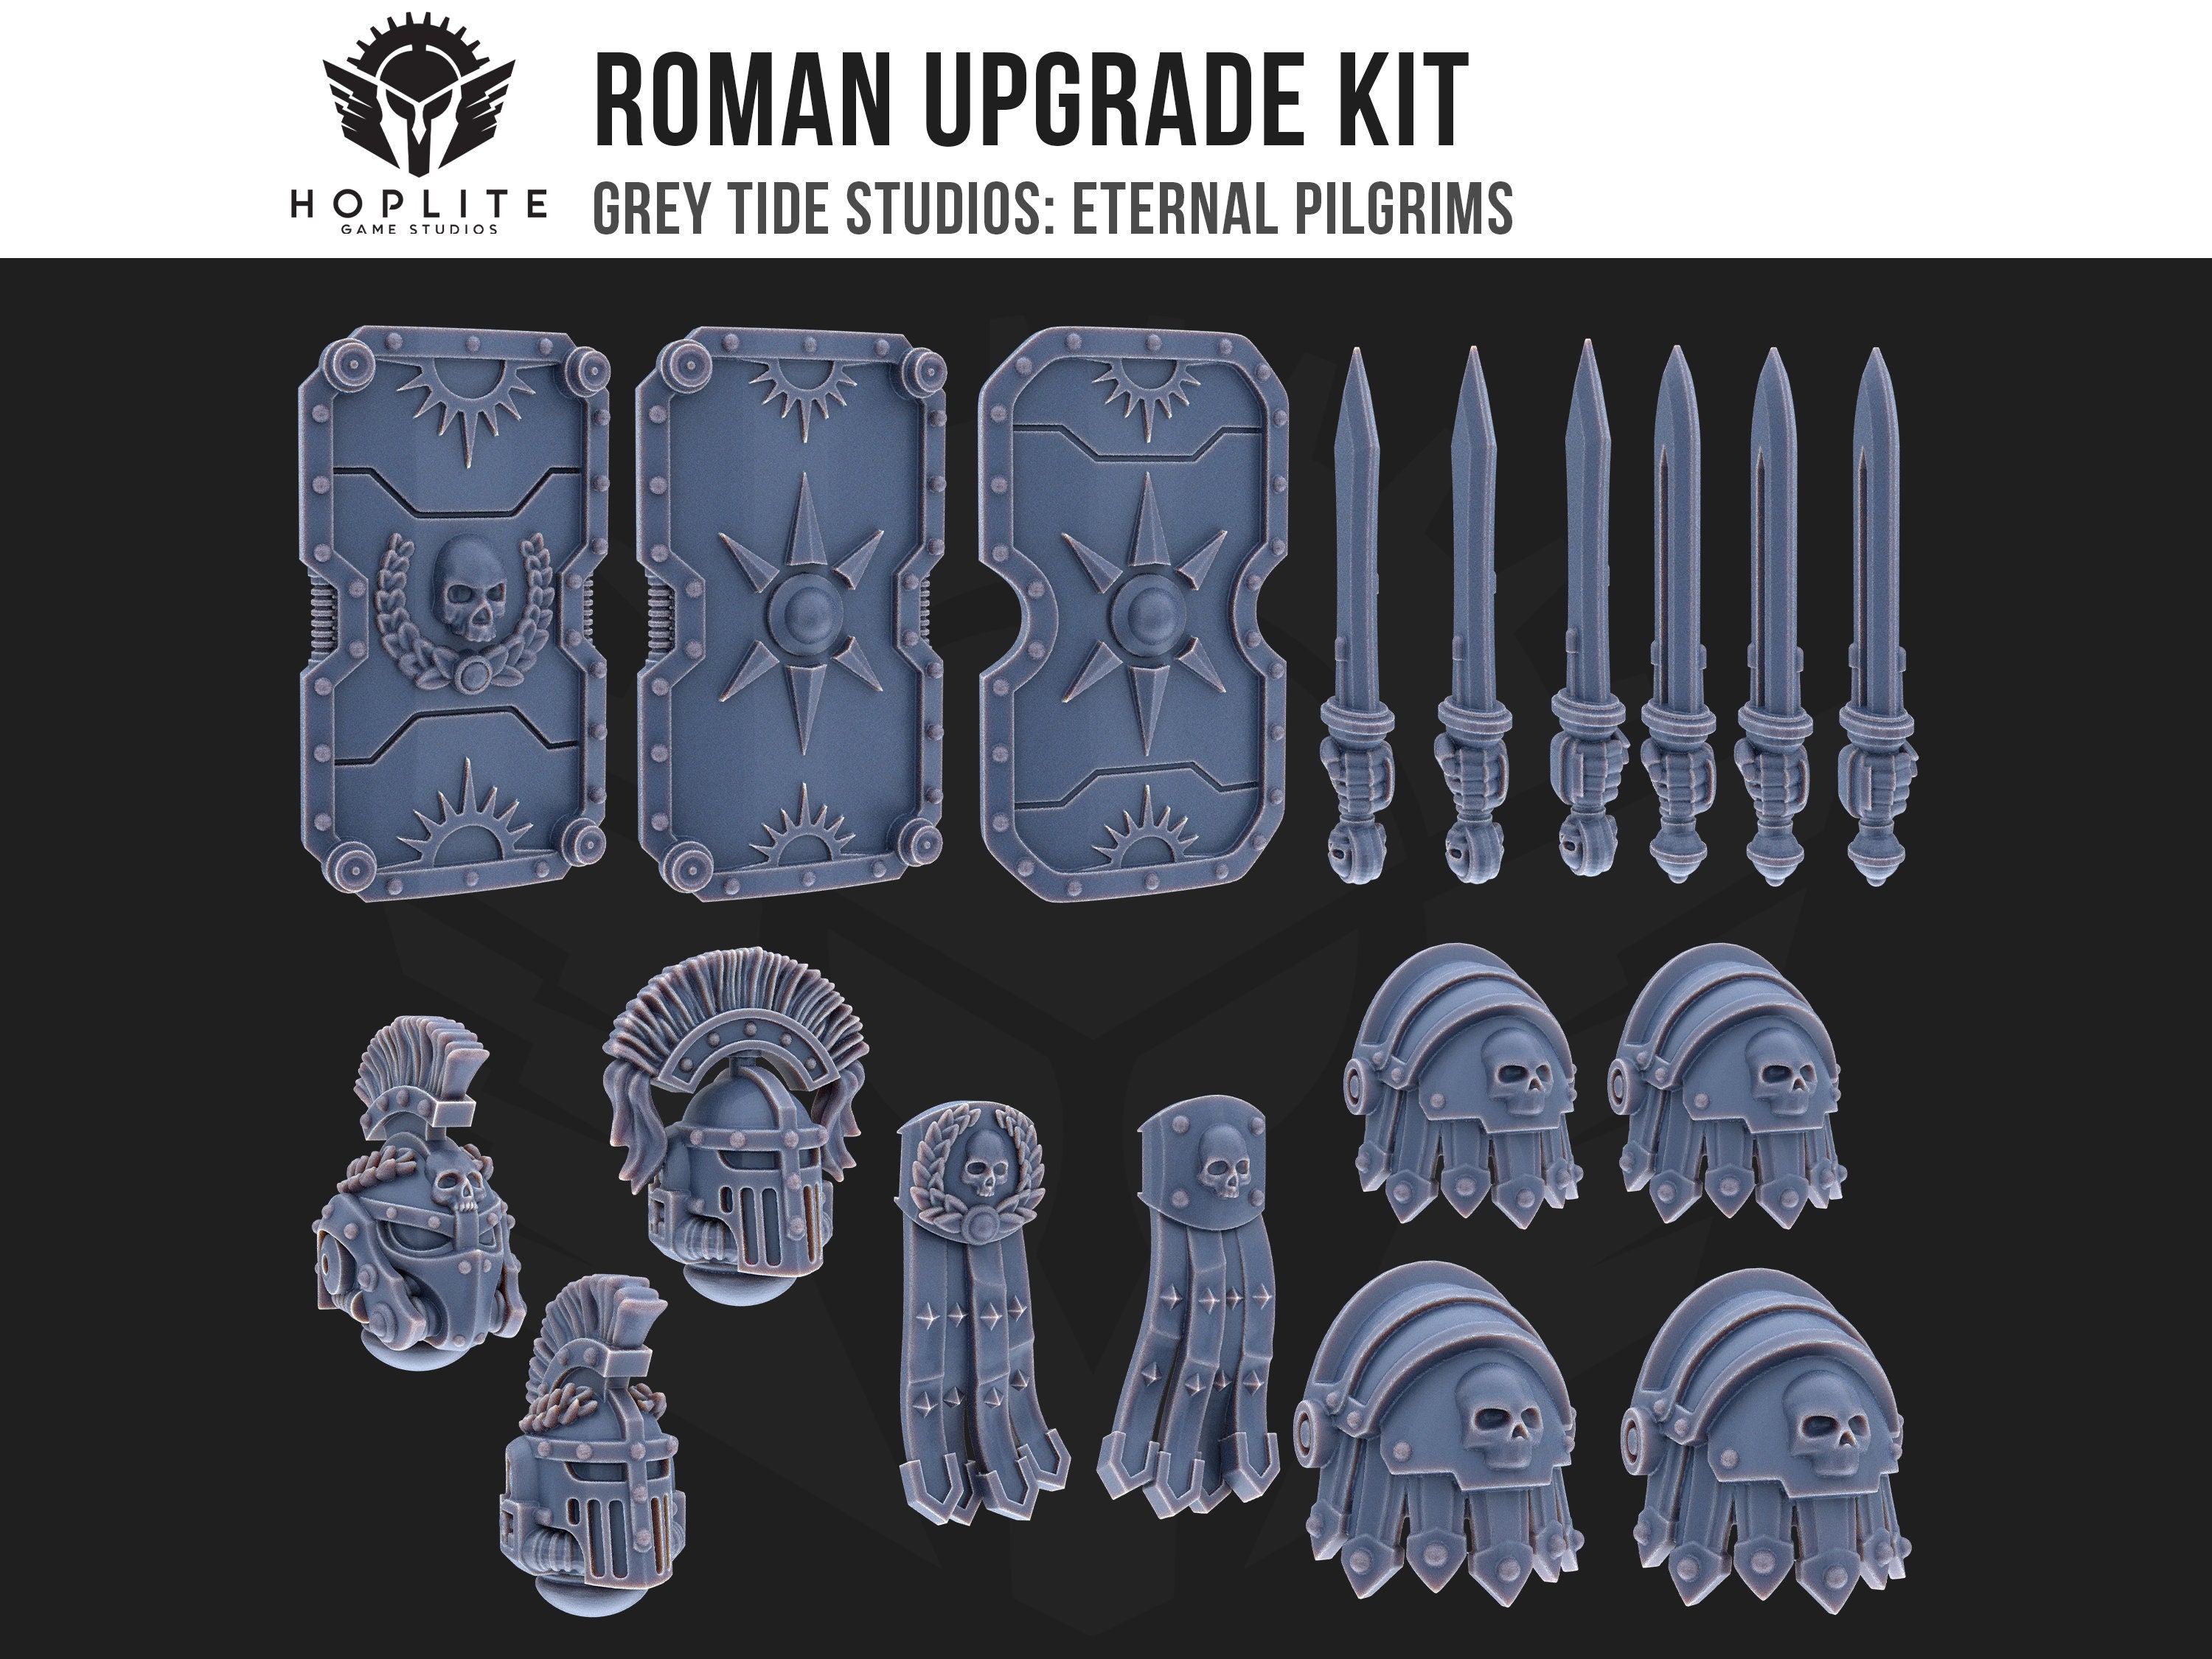 Kit de actualización romano (x18) | Estudios de marea gris | Peregrinos eternos | Piezas y brocas de conversión